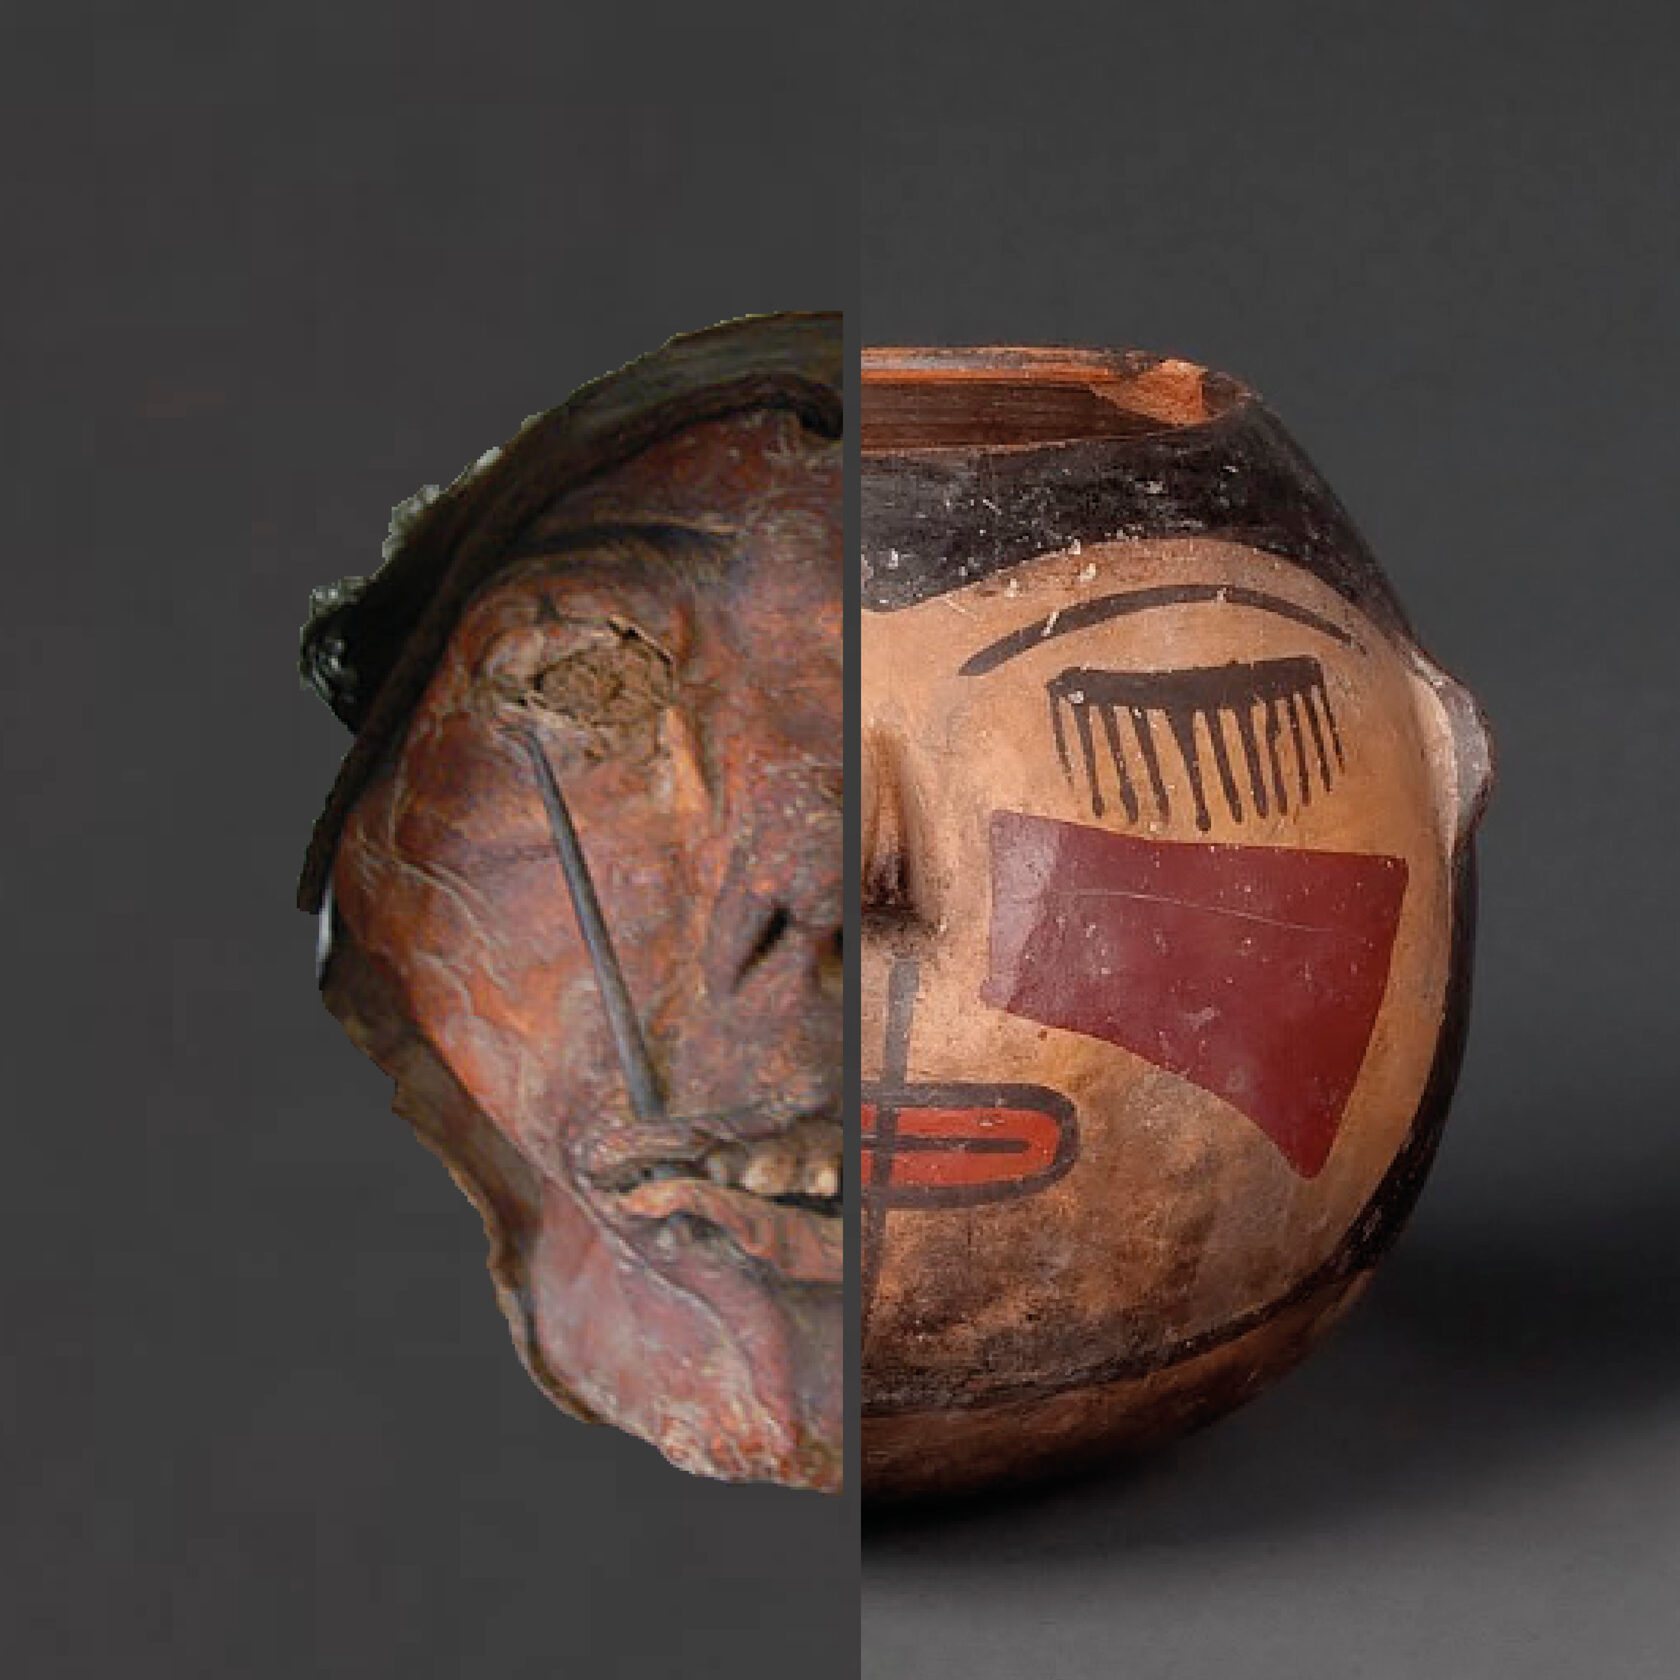 Мумифицированная трофейная голова из коллекции Museum zu Allerheiligen, Schaffhausen и сосуд в виде трофейной головы культуры Наска (1-800 гг. н.э.) из коллекции Museo Larco, Lima.